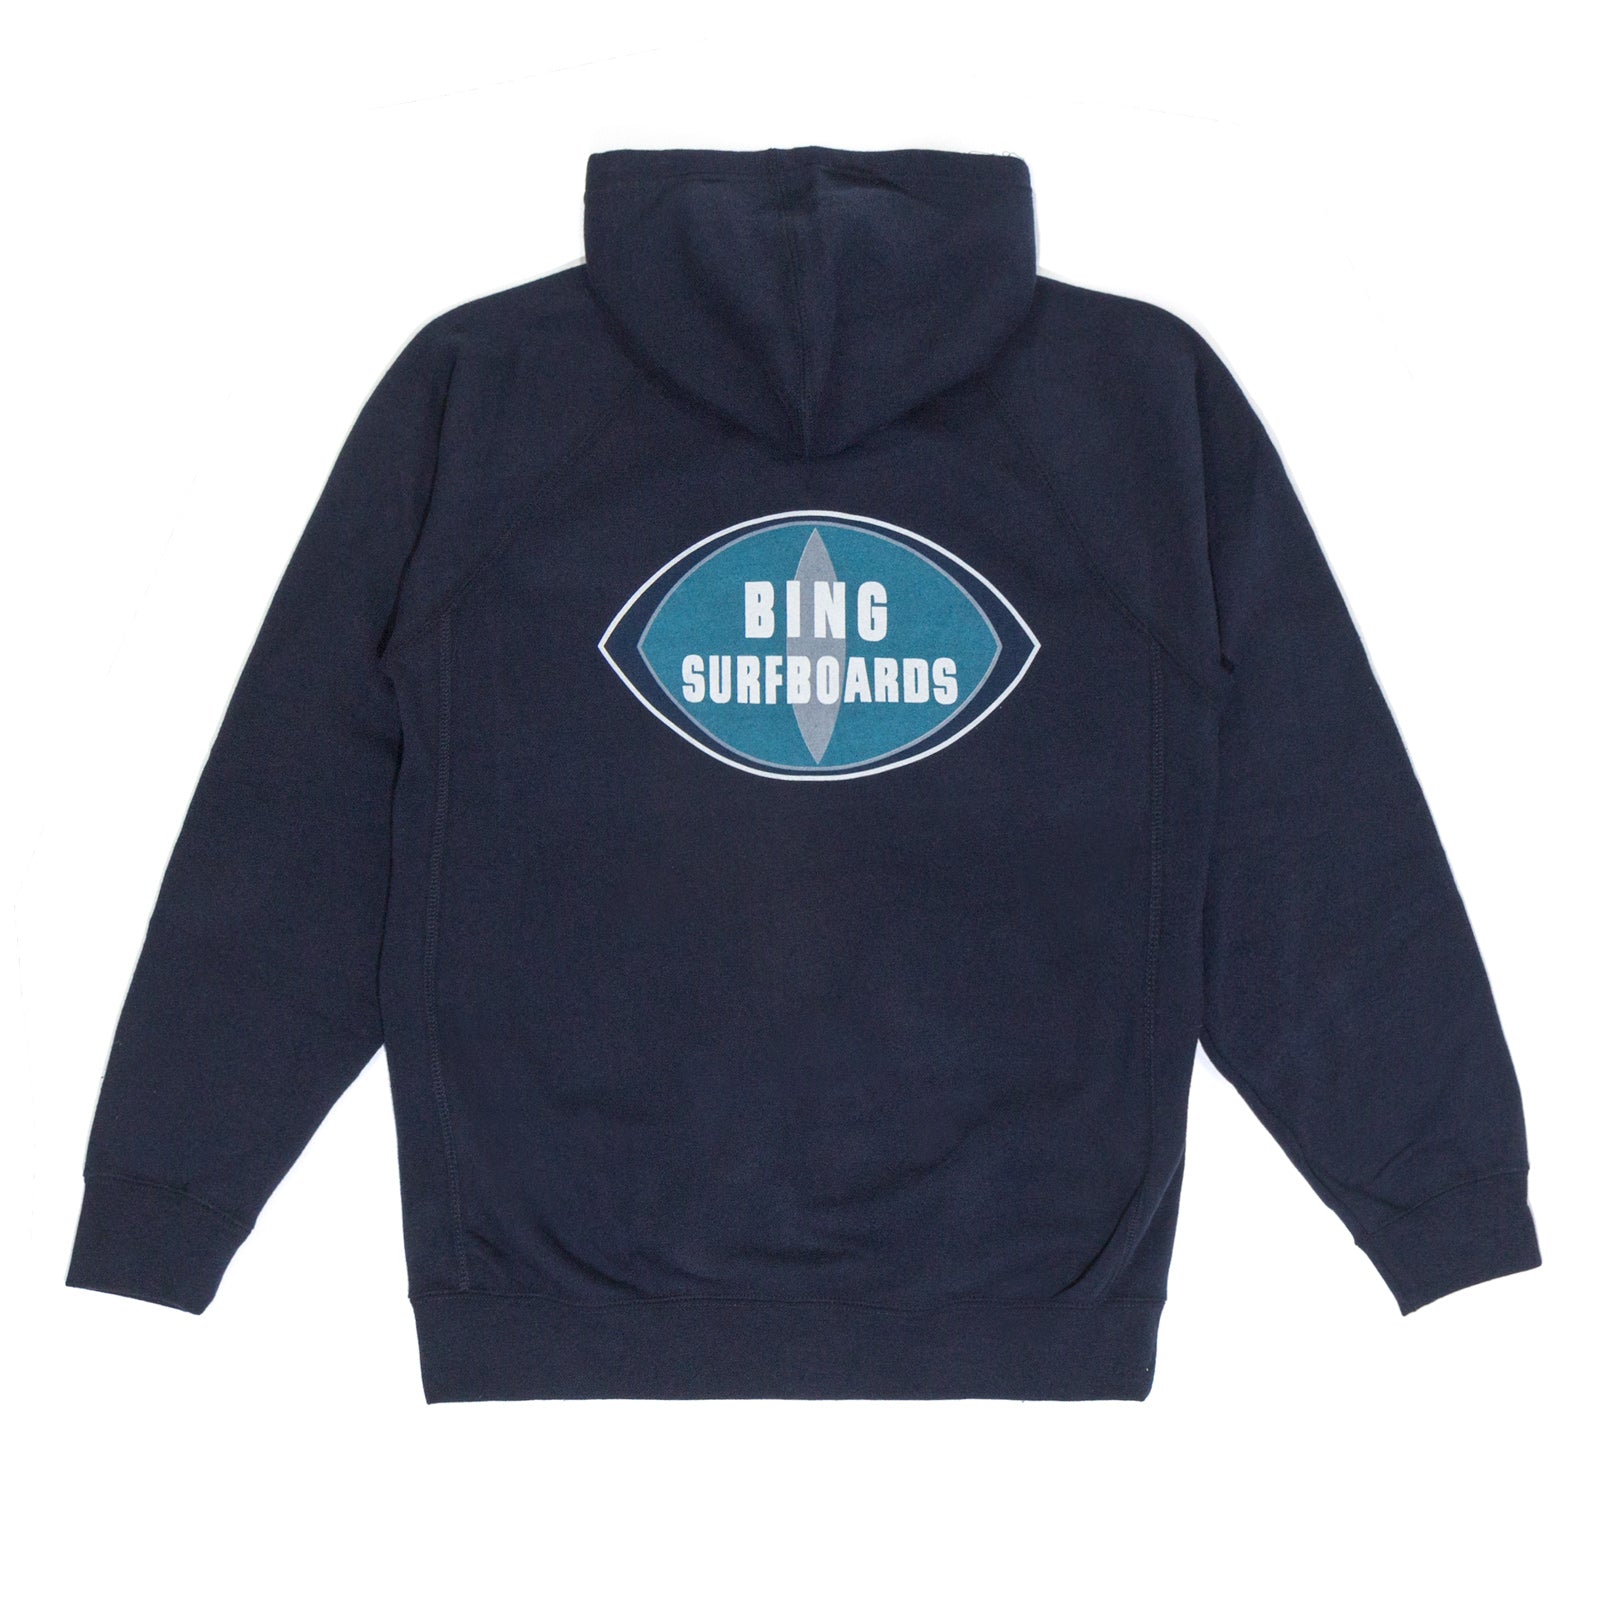 ORIGINAL BING Premium Hooded Zip Sweatshirt - Navy